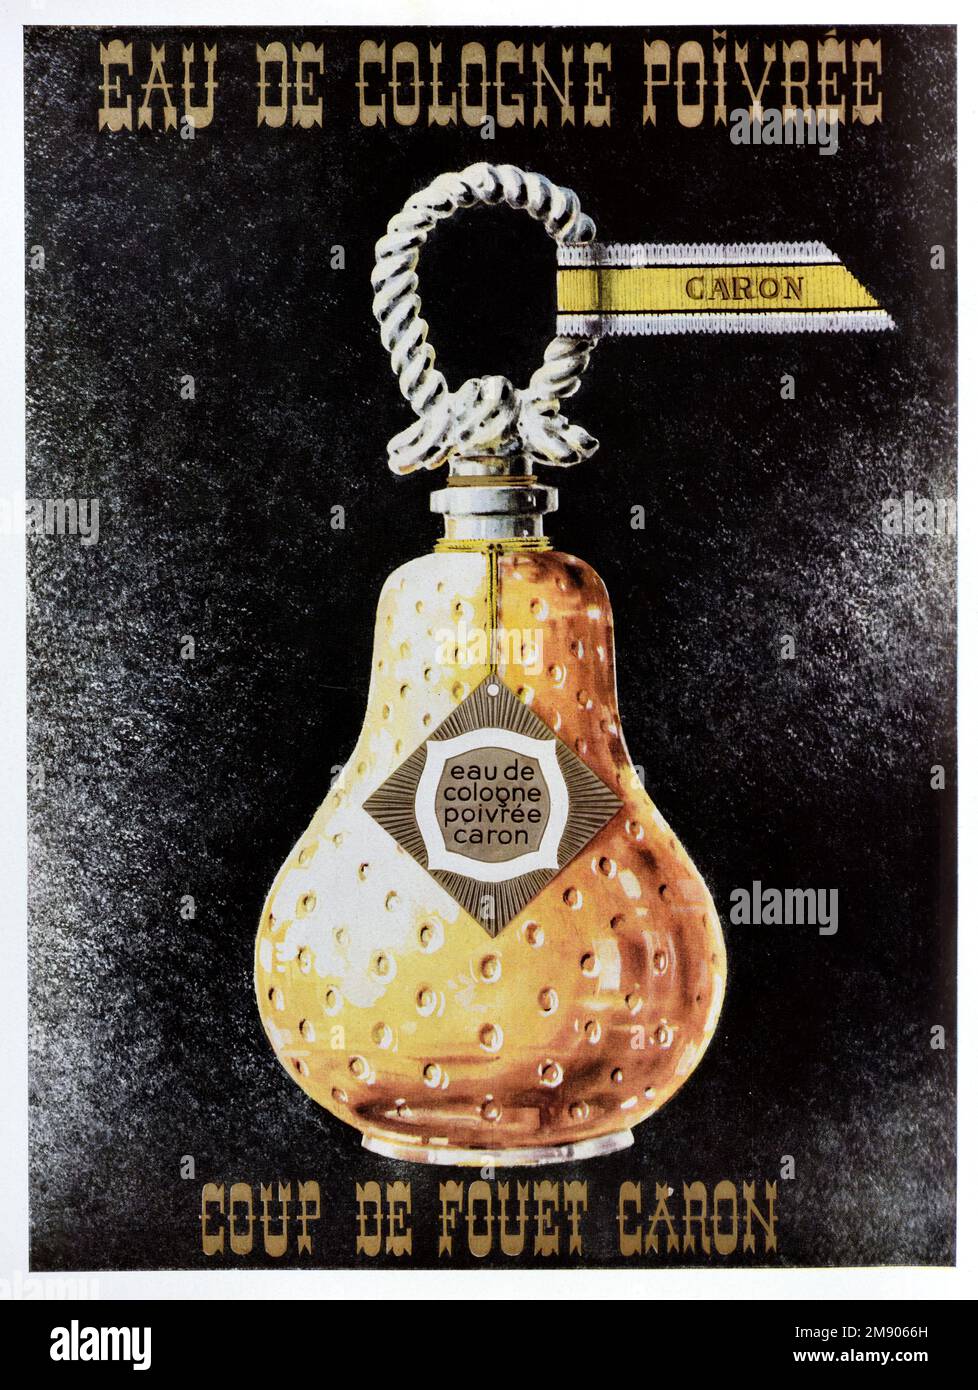 Oldtimer- oder Altanzeige, Werbung, Publicity oder Illustration für Caron Parfüm oder Eau de Cologne 1956. Abgebildet mit Bild einer birnenförmigen Parfümflasche. Anzeige 1956 Stockfoto